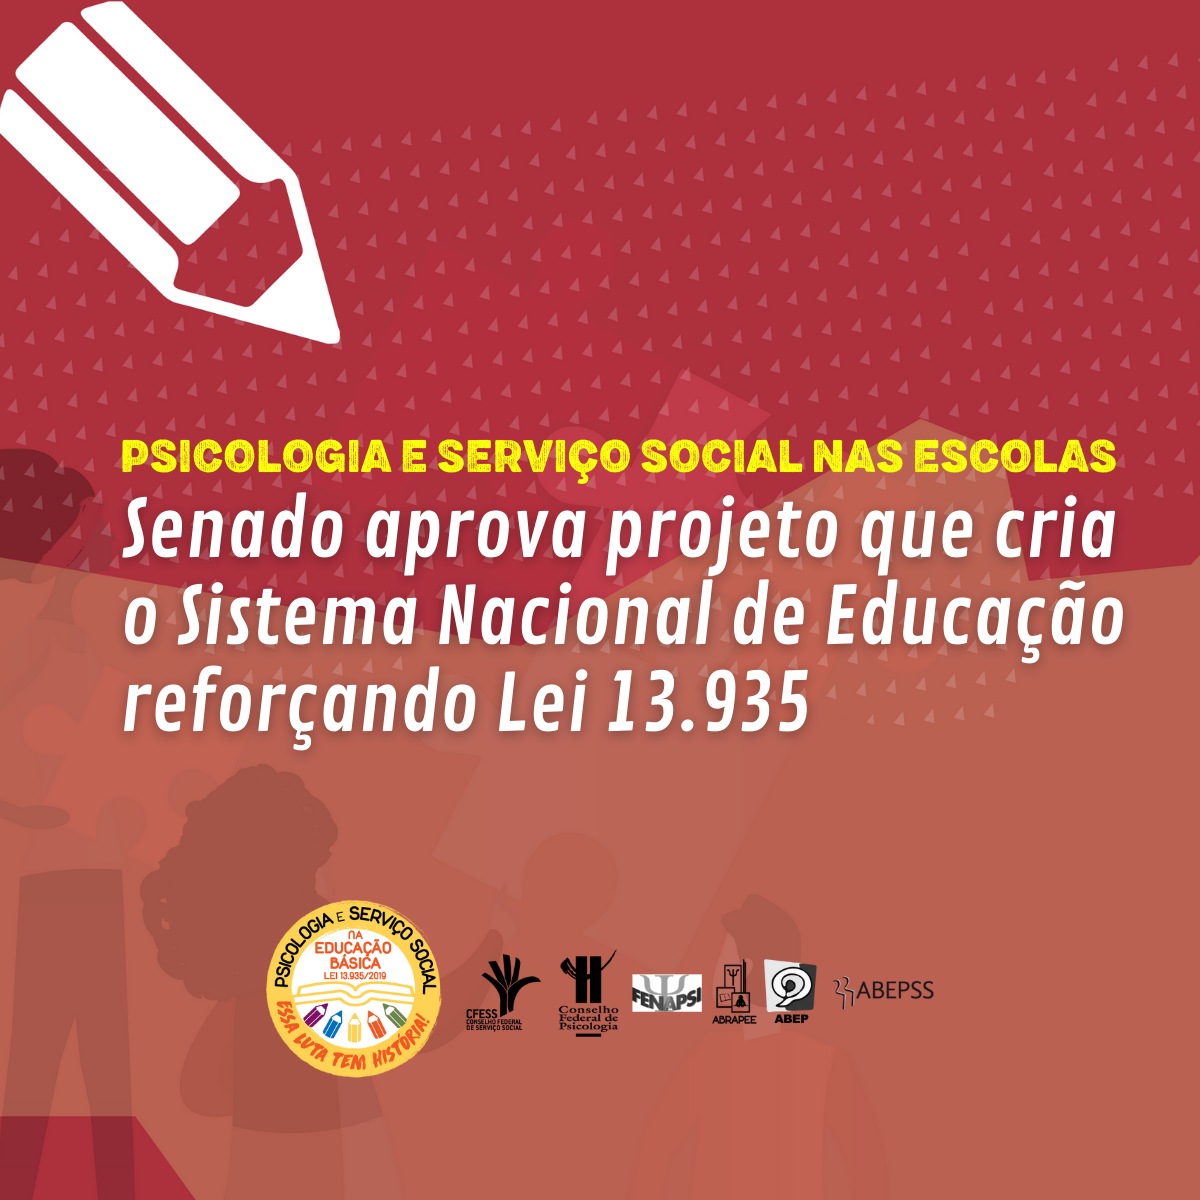 Psicologia e Serviço Social na educação: CRP-MG e CRESS-MG